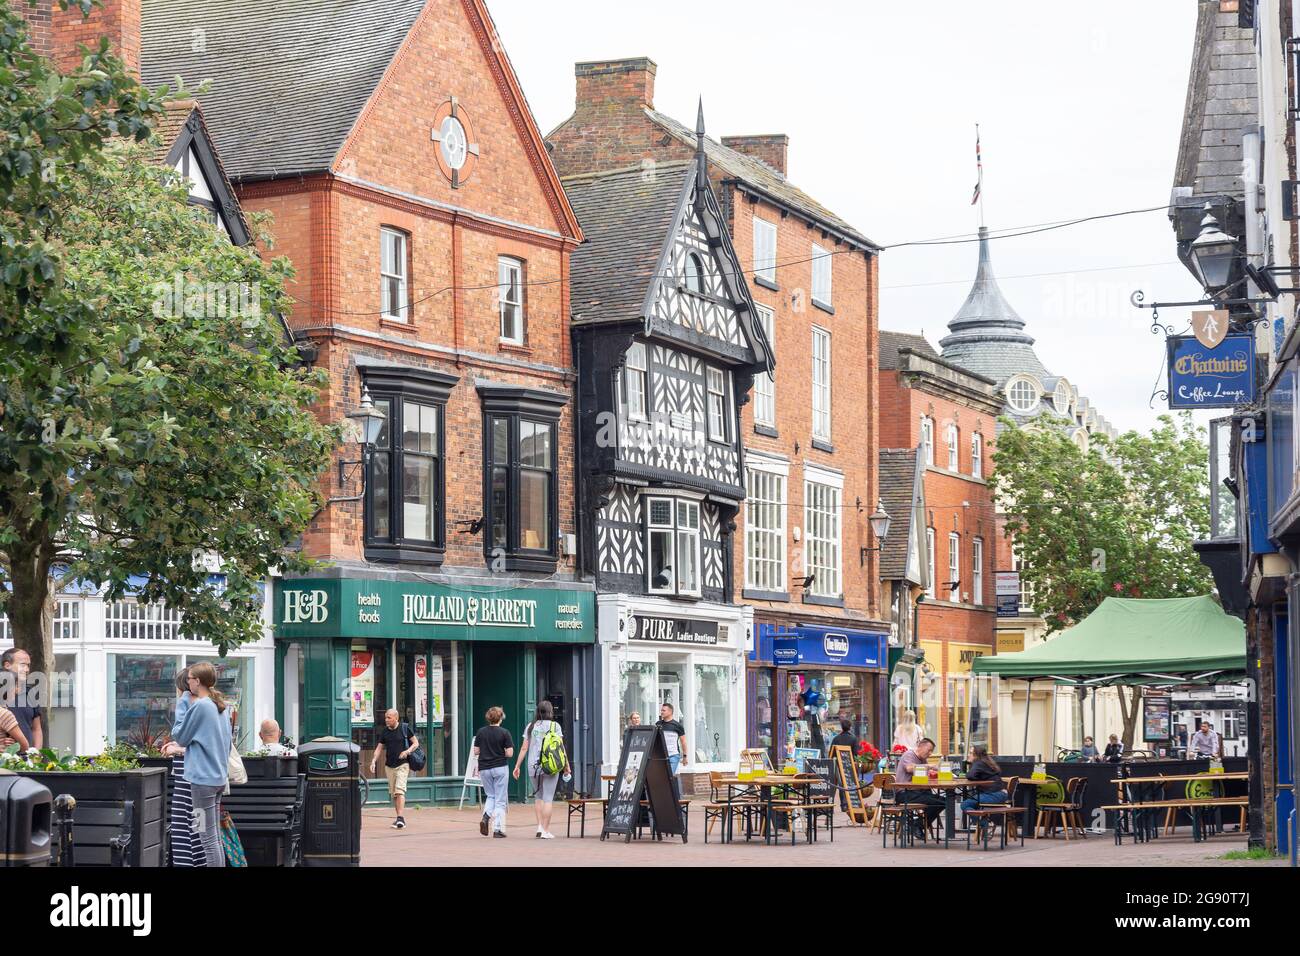 Town Square, High Street, Nantwich, Ches Hire, England, Vereinigtes Königreich Stockfoto